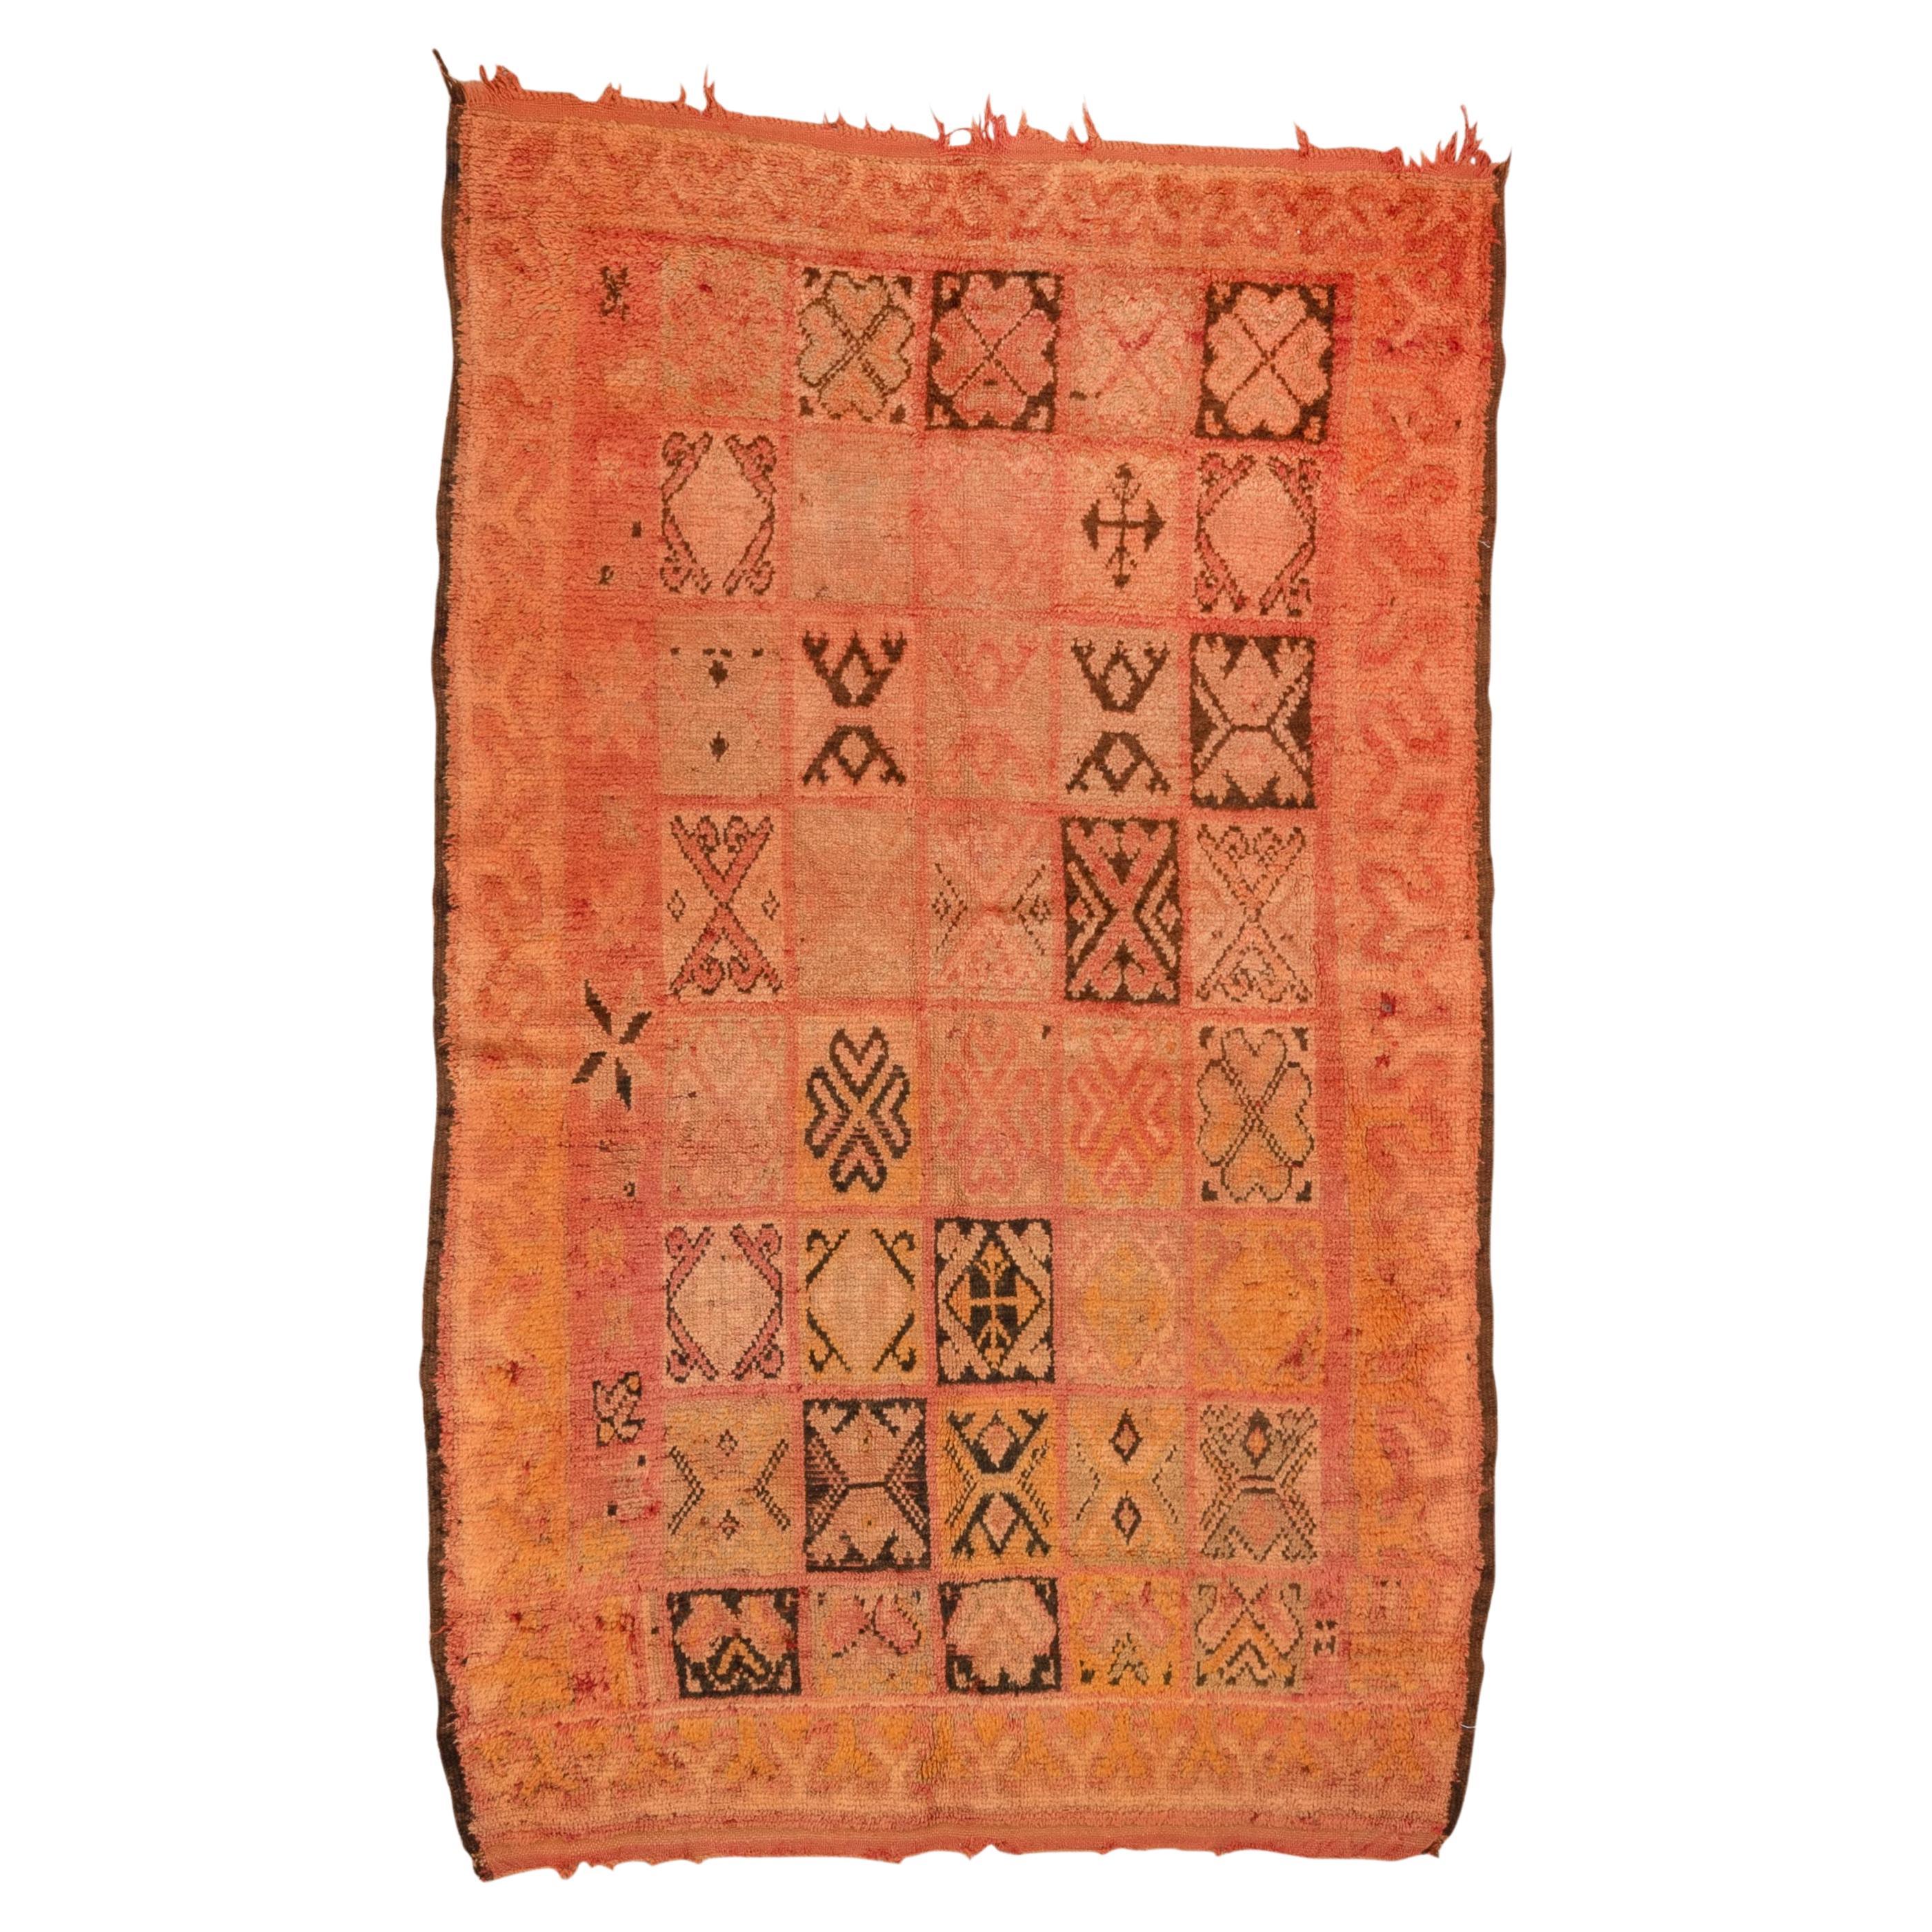 Marokkanischer Teppich mit Stammes-X-Muster in Herbst-orange-Tönen